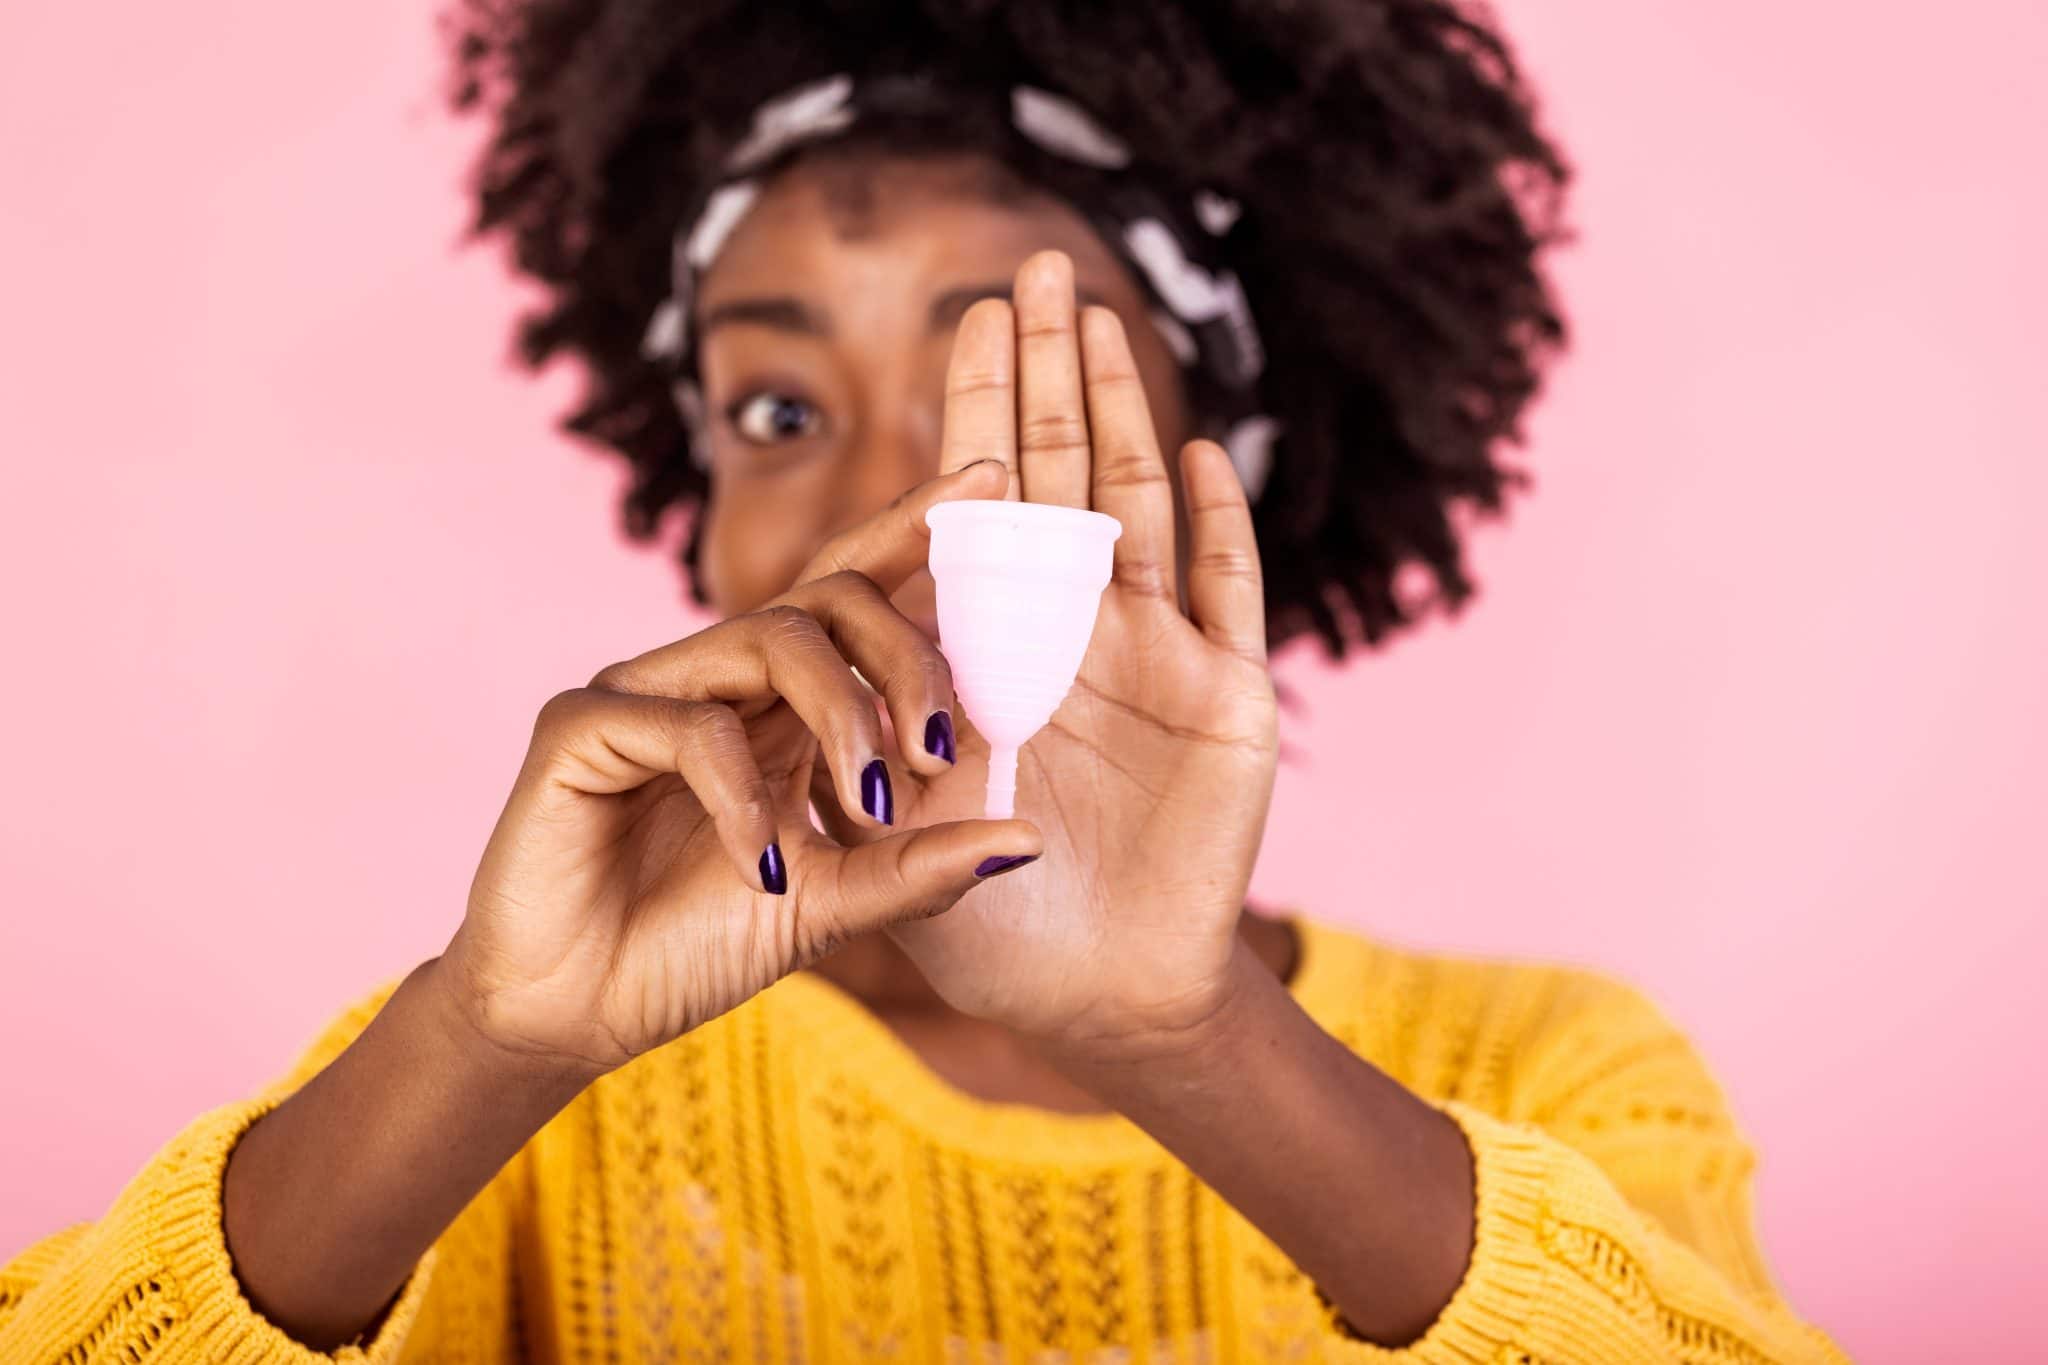 Pourquoi utiliser une cup menstruelle ?